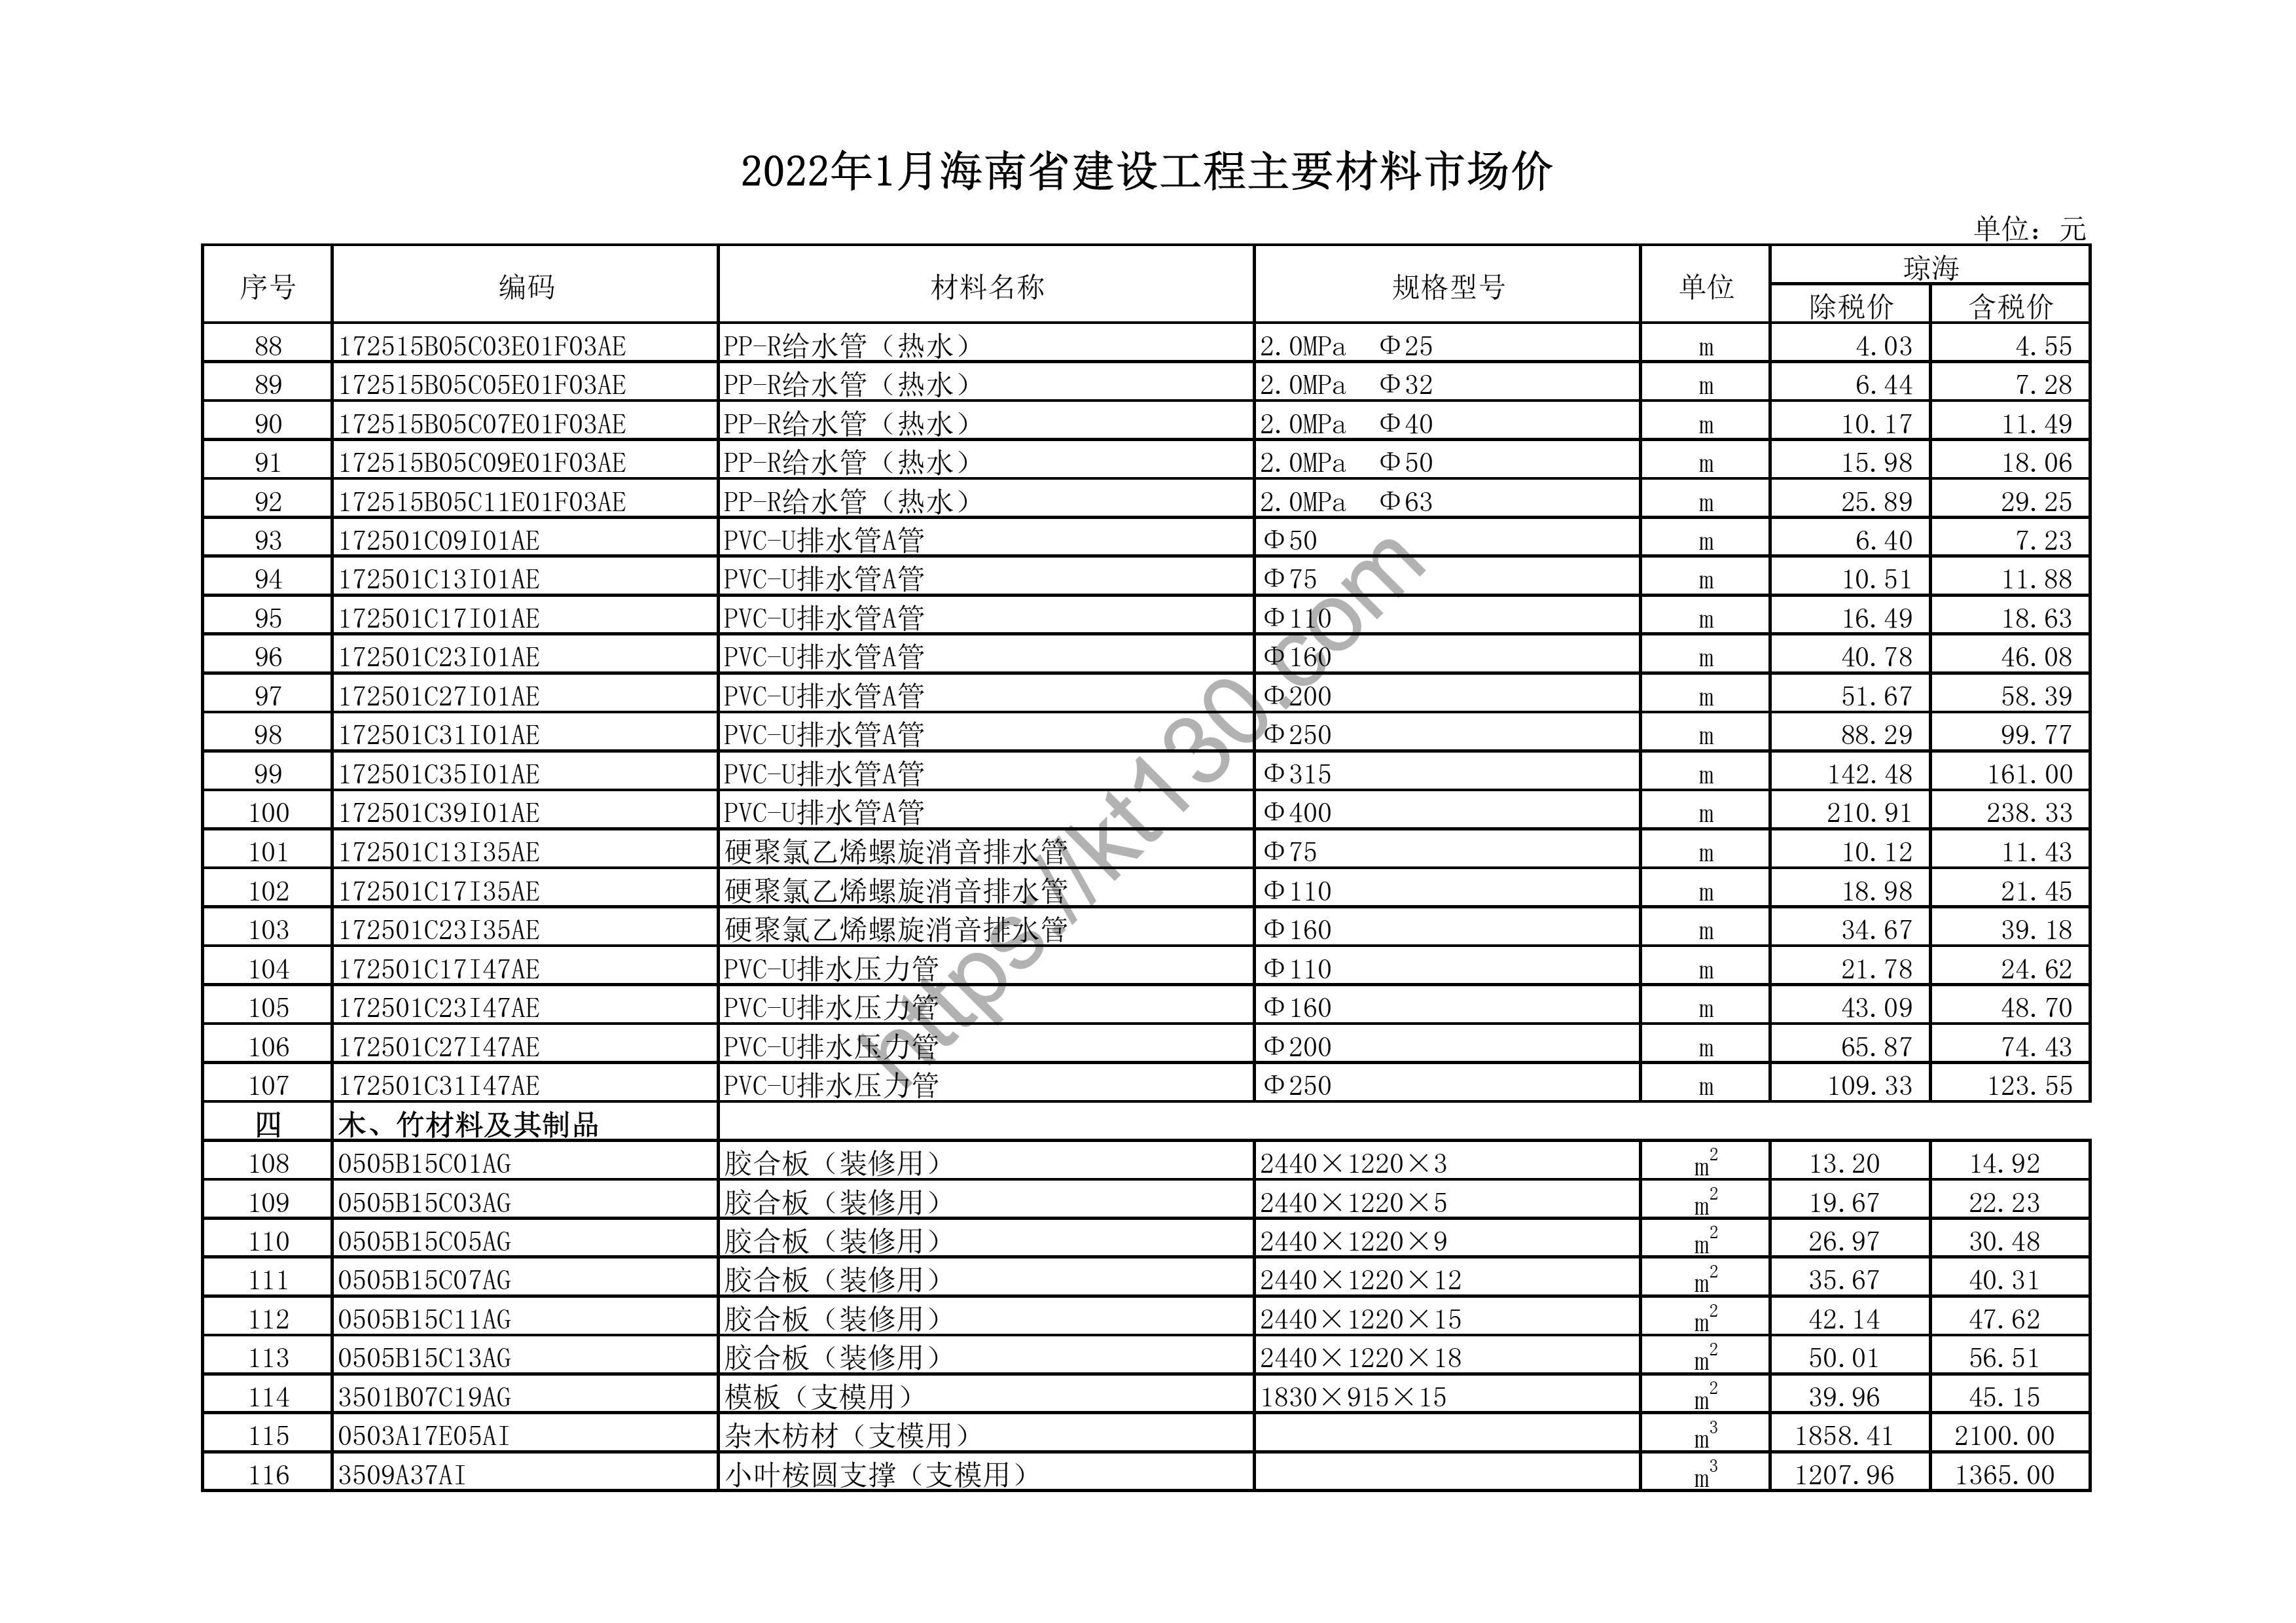 海南省2022年1月建筑材料价_排水压力管_43652